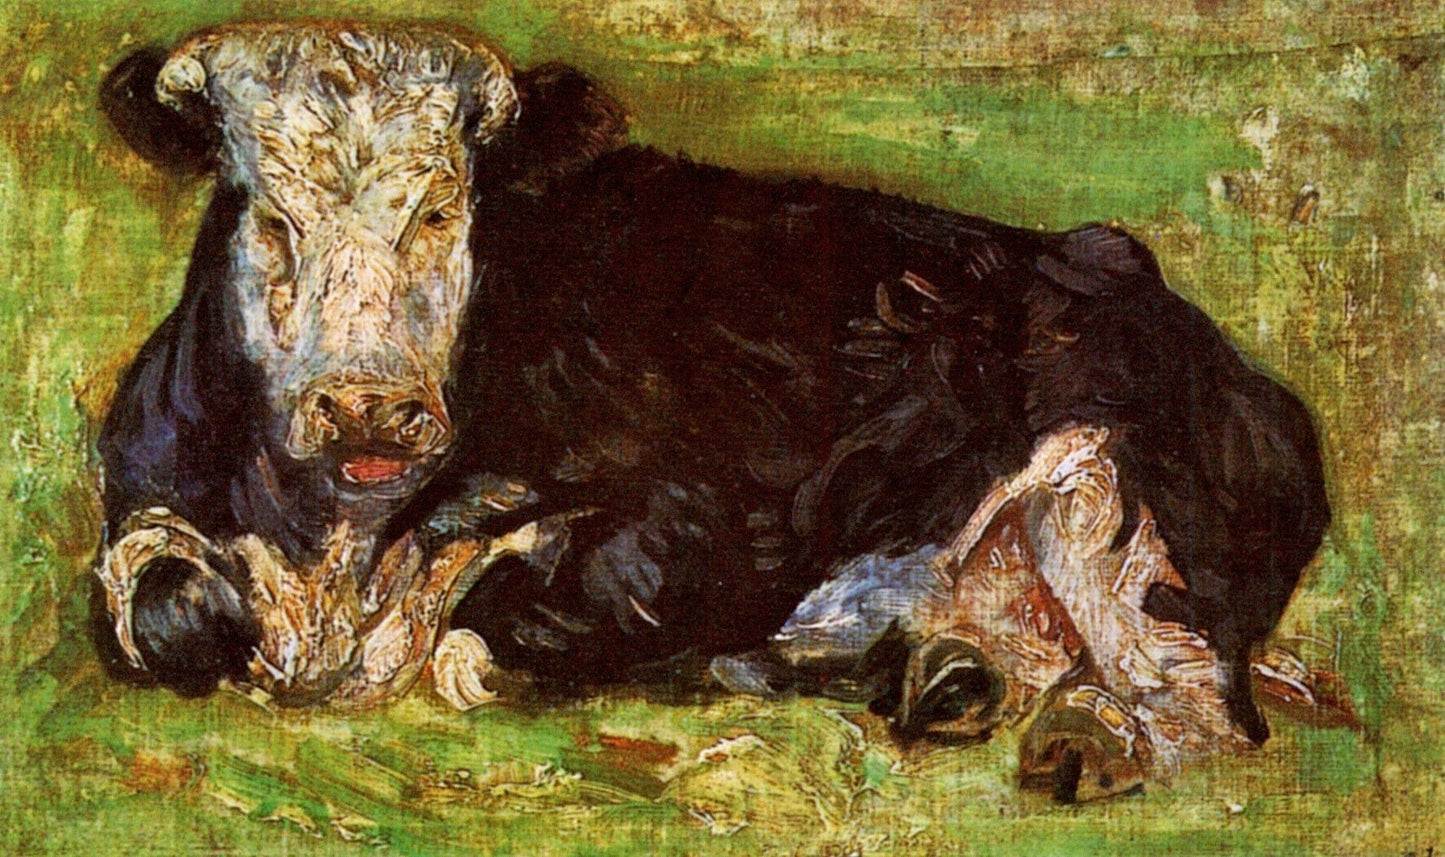 Lying Cow, 1883